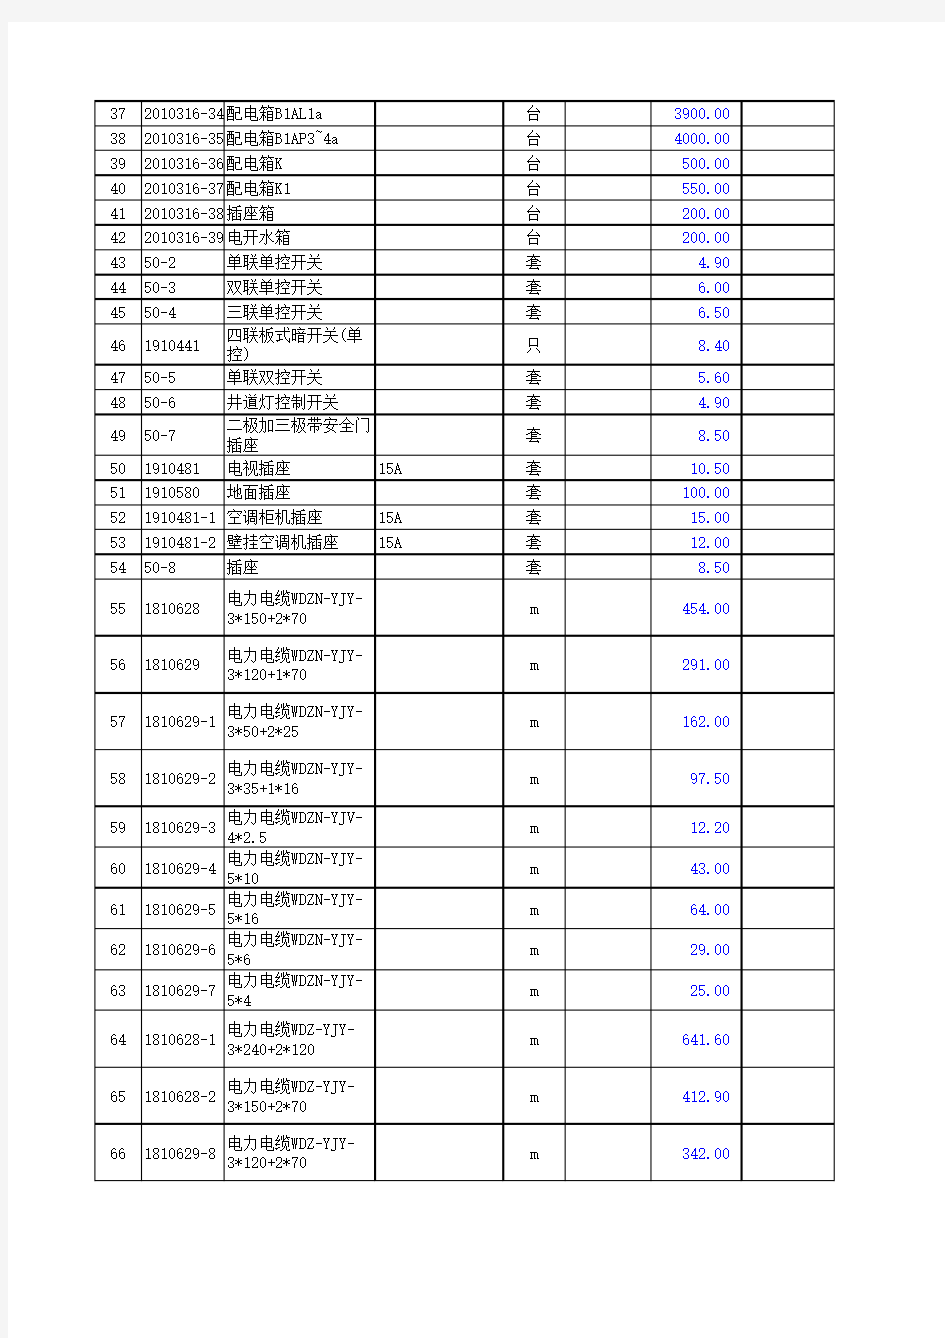 江苏公安管理干部学院教学综合楼(A区)安装工程-表-15-1发包人供应材料一览表